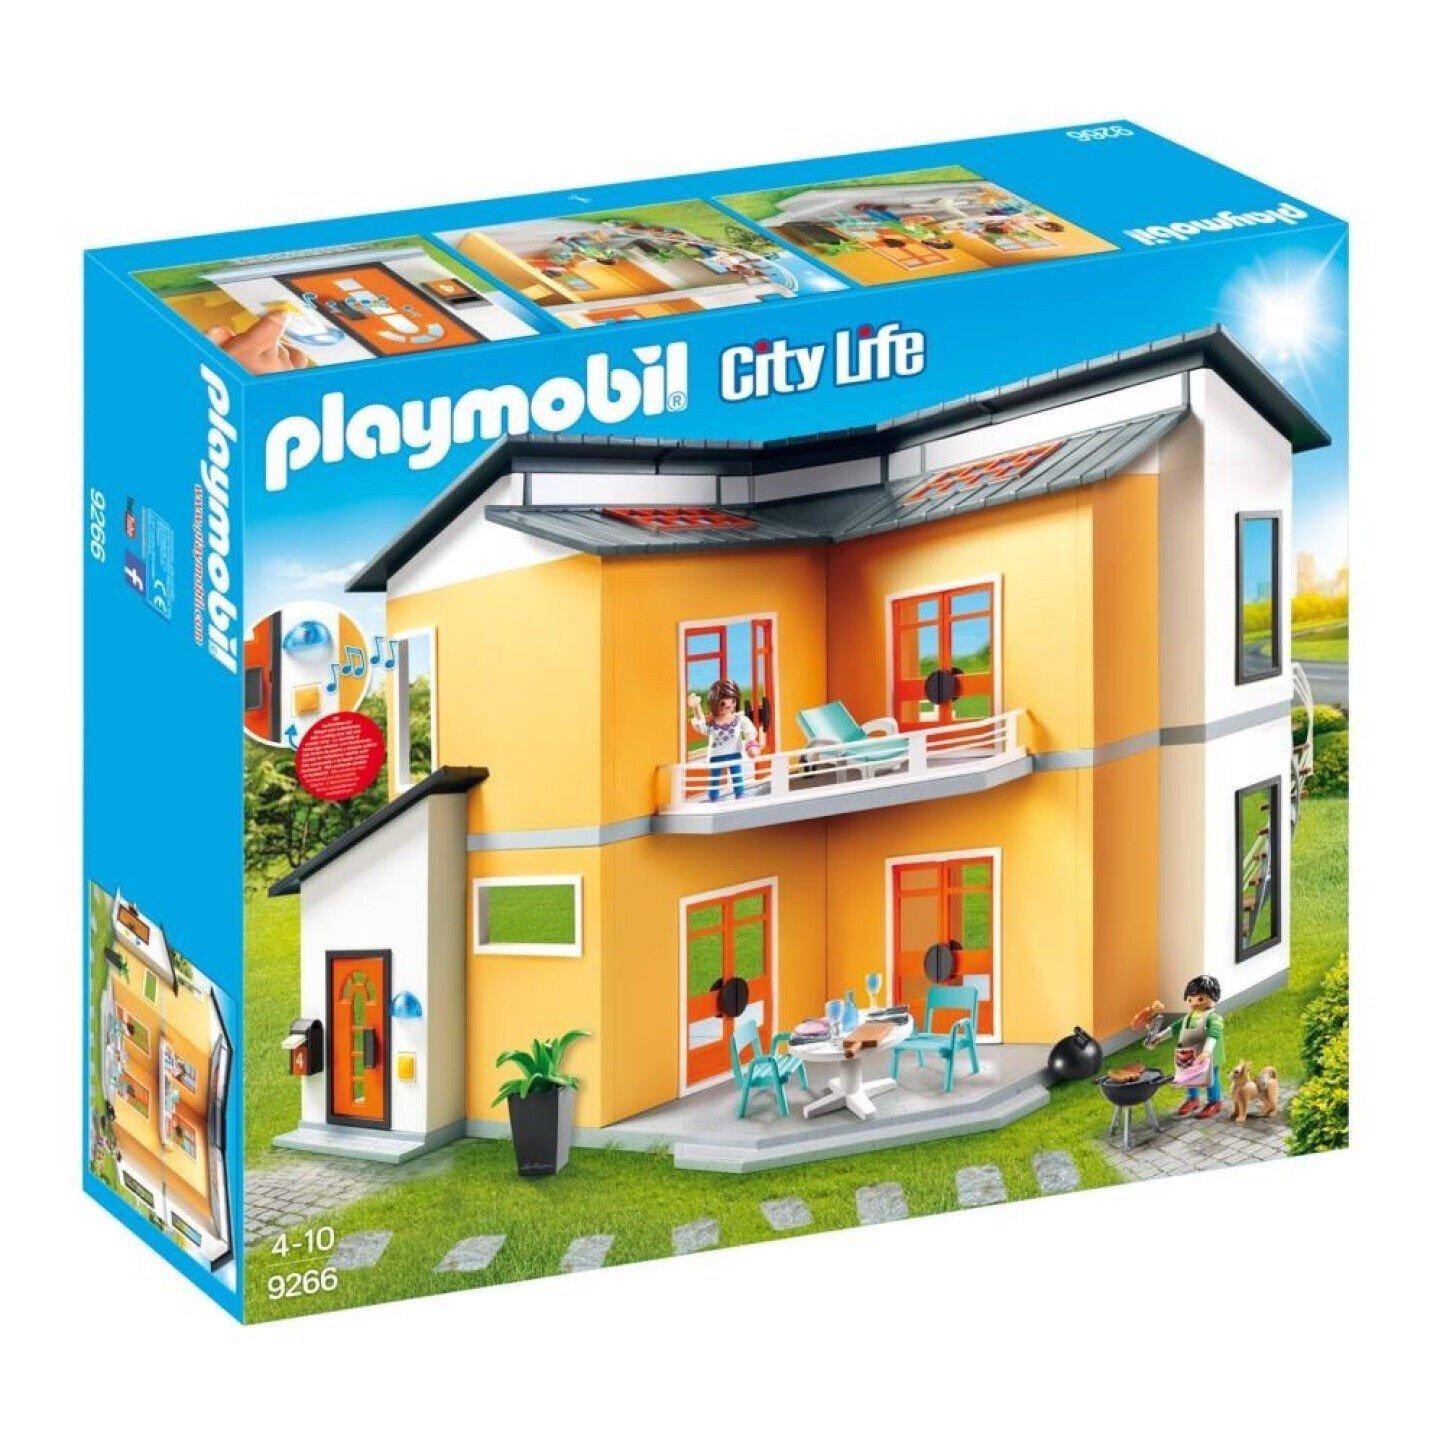 Đồ chơi mô hình Playmobil Biệt thự hiện đại kèm nhân vật, nội thất và hiệu ứng đèn &amp; âm thanh 137 pcs